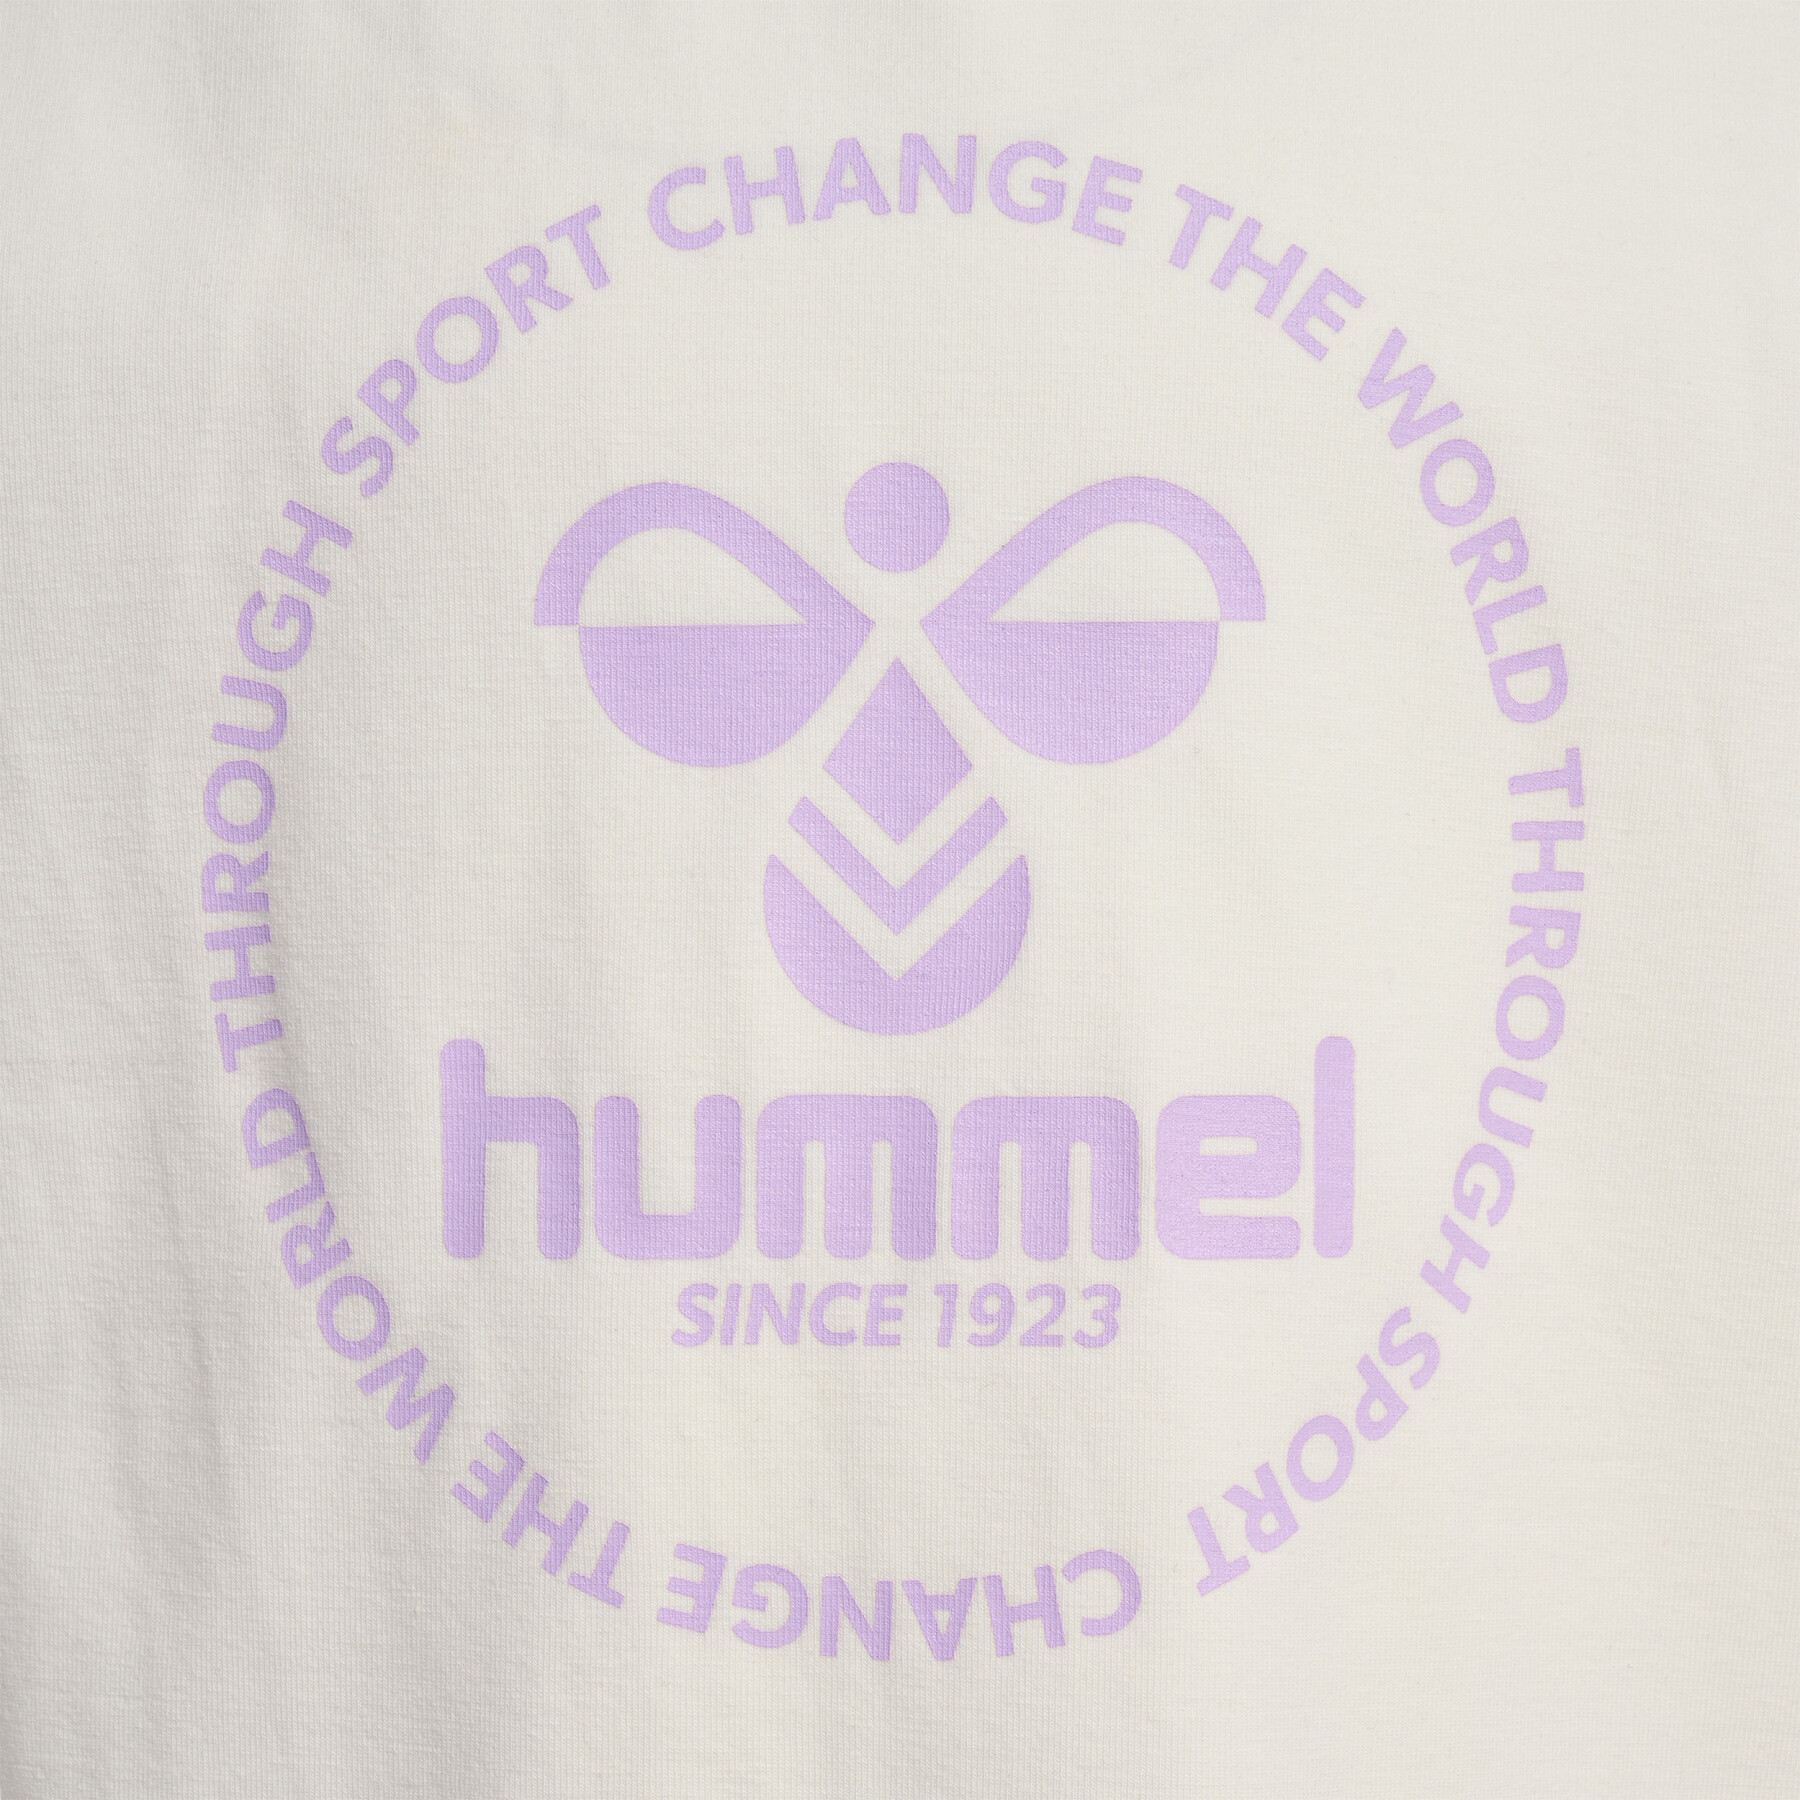 T-shirt da bambina Hummel Jumpy